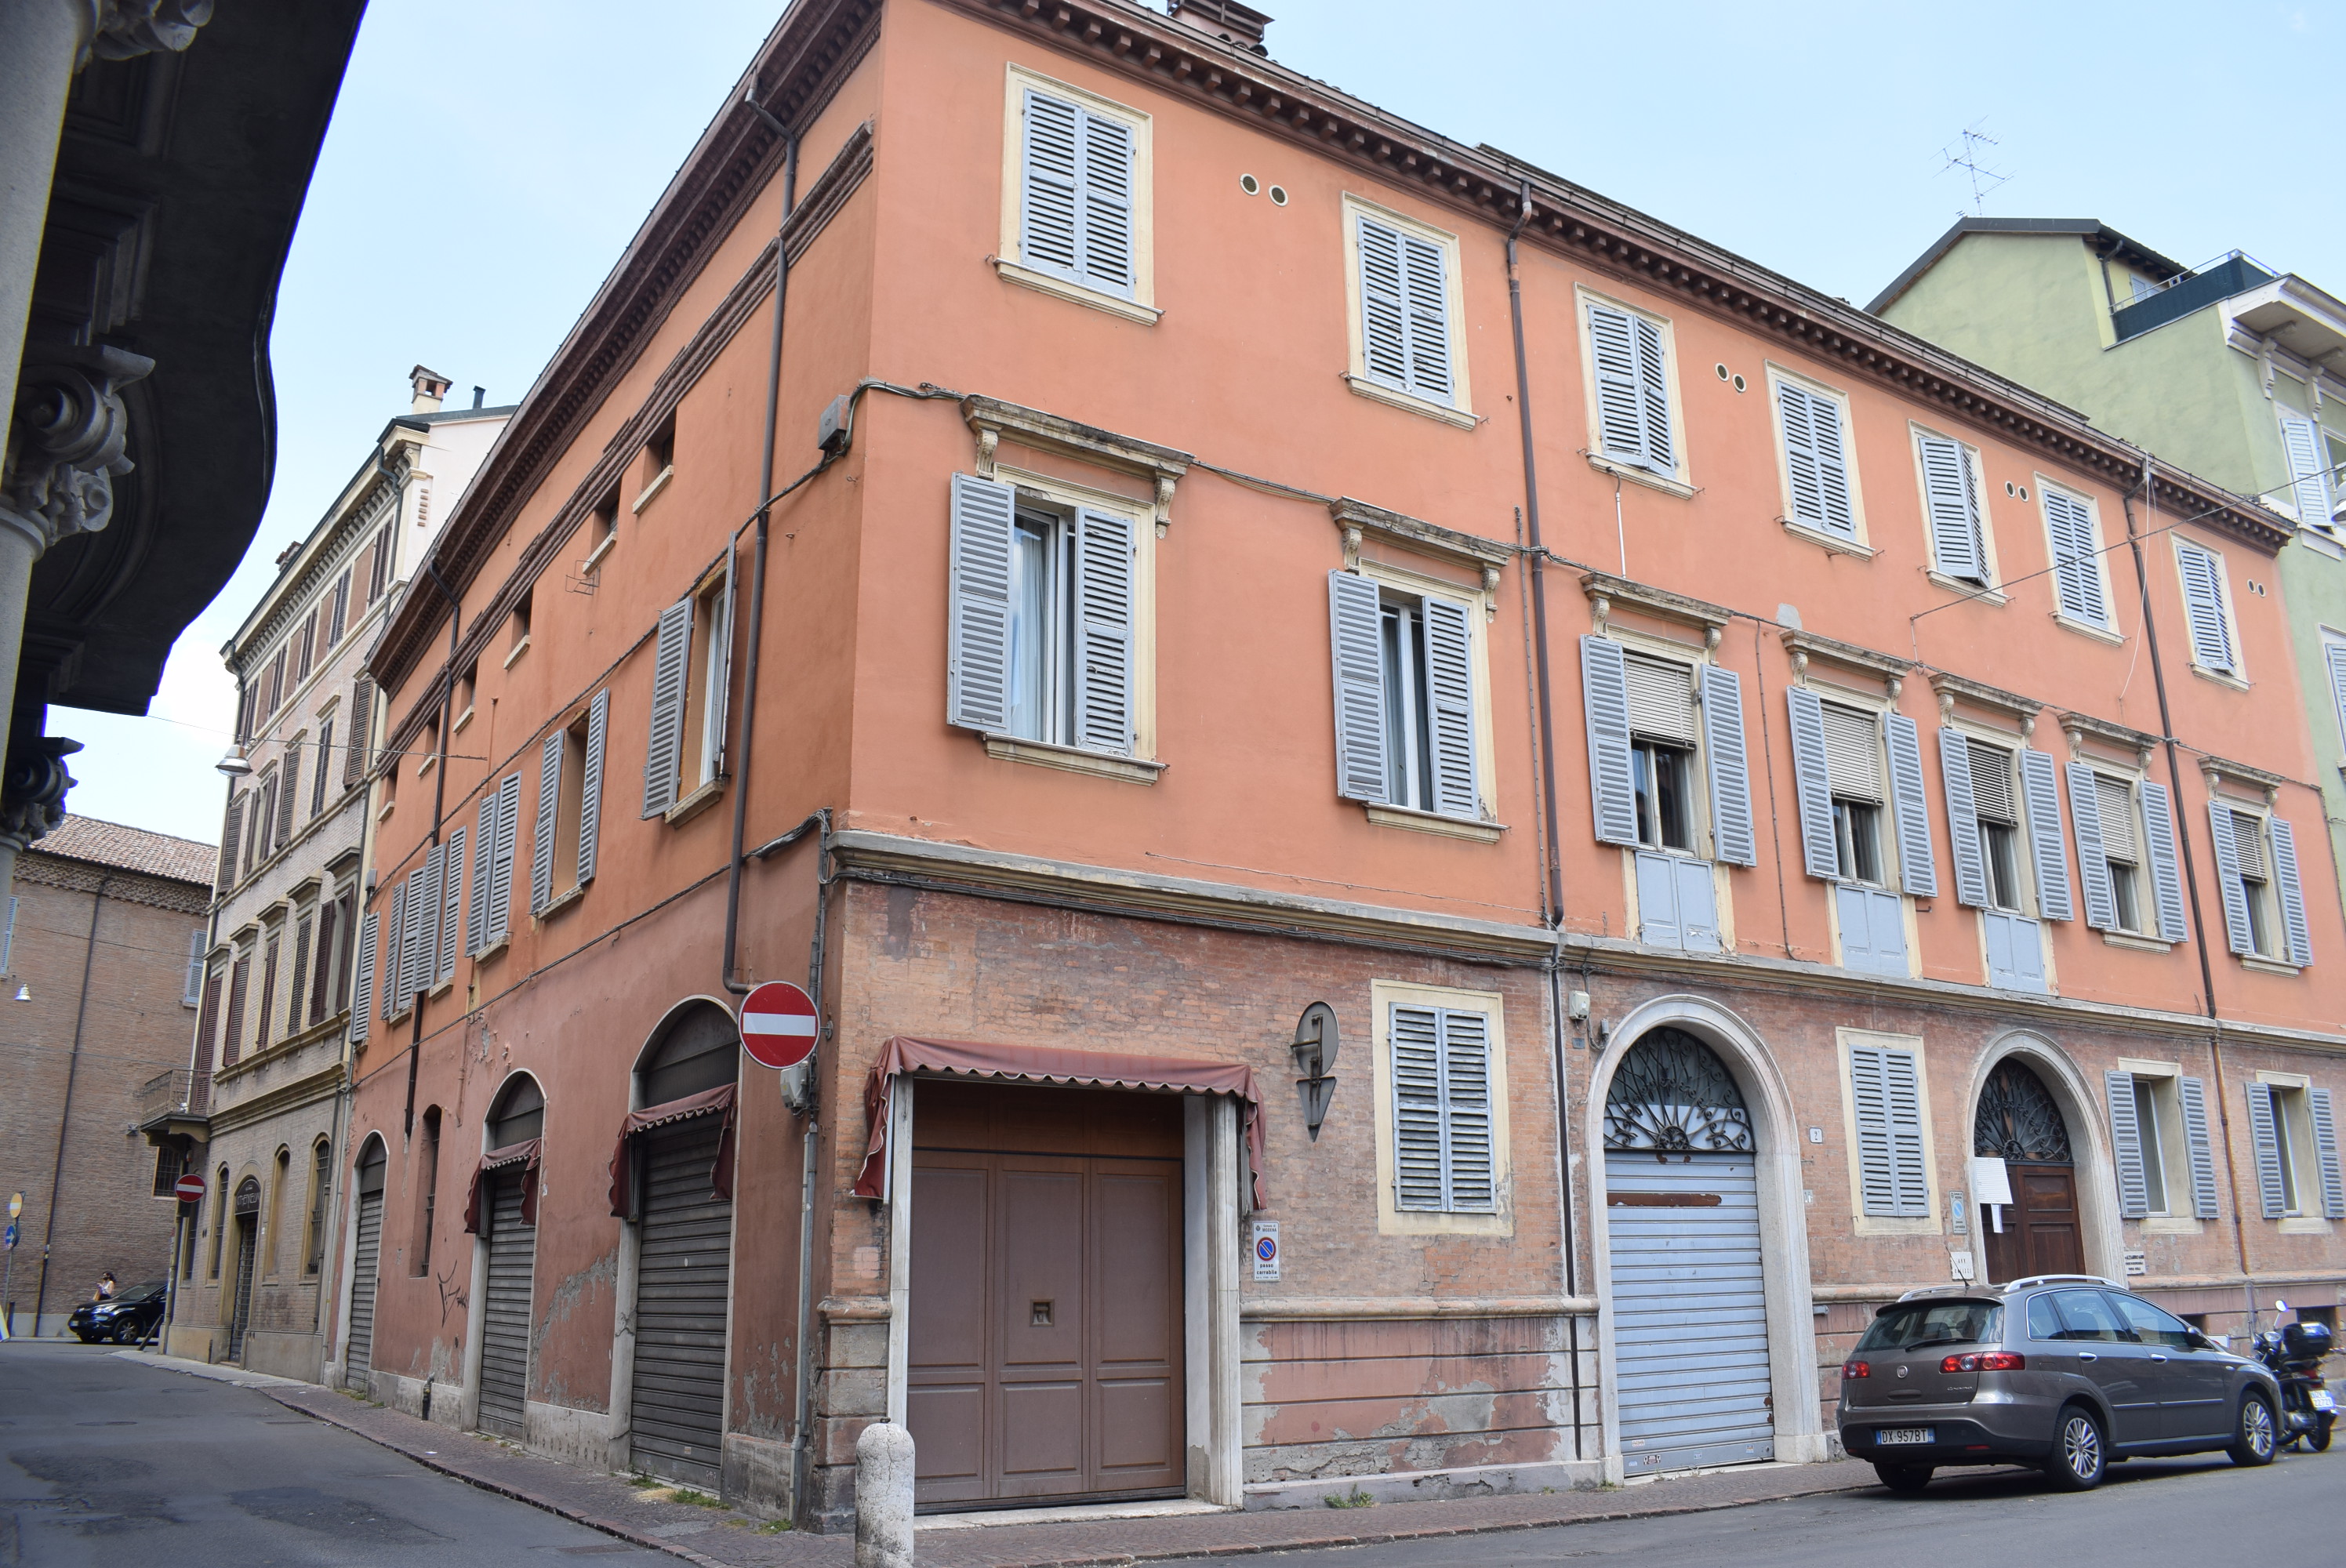 Casa Colombi (palazzo, nobiliare) - Modena (MO)  (sec. XX, terzo quarto)